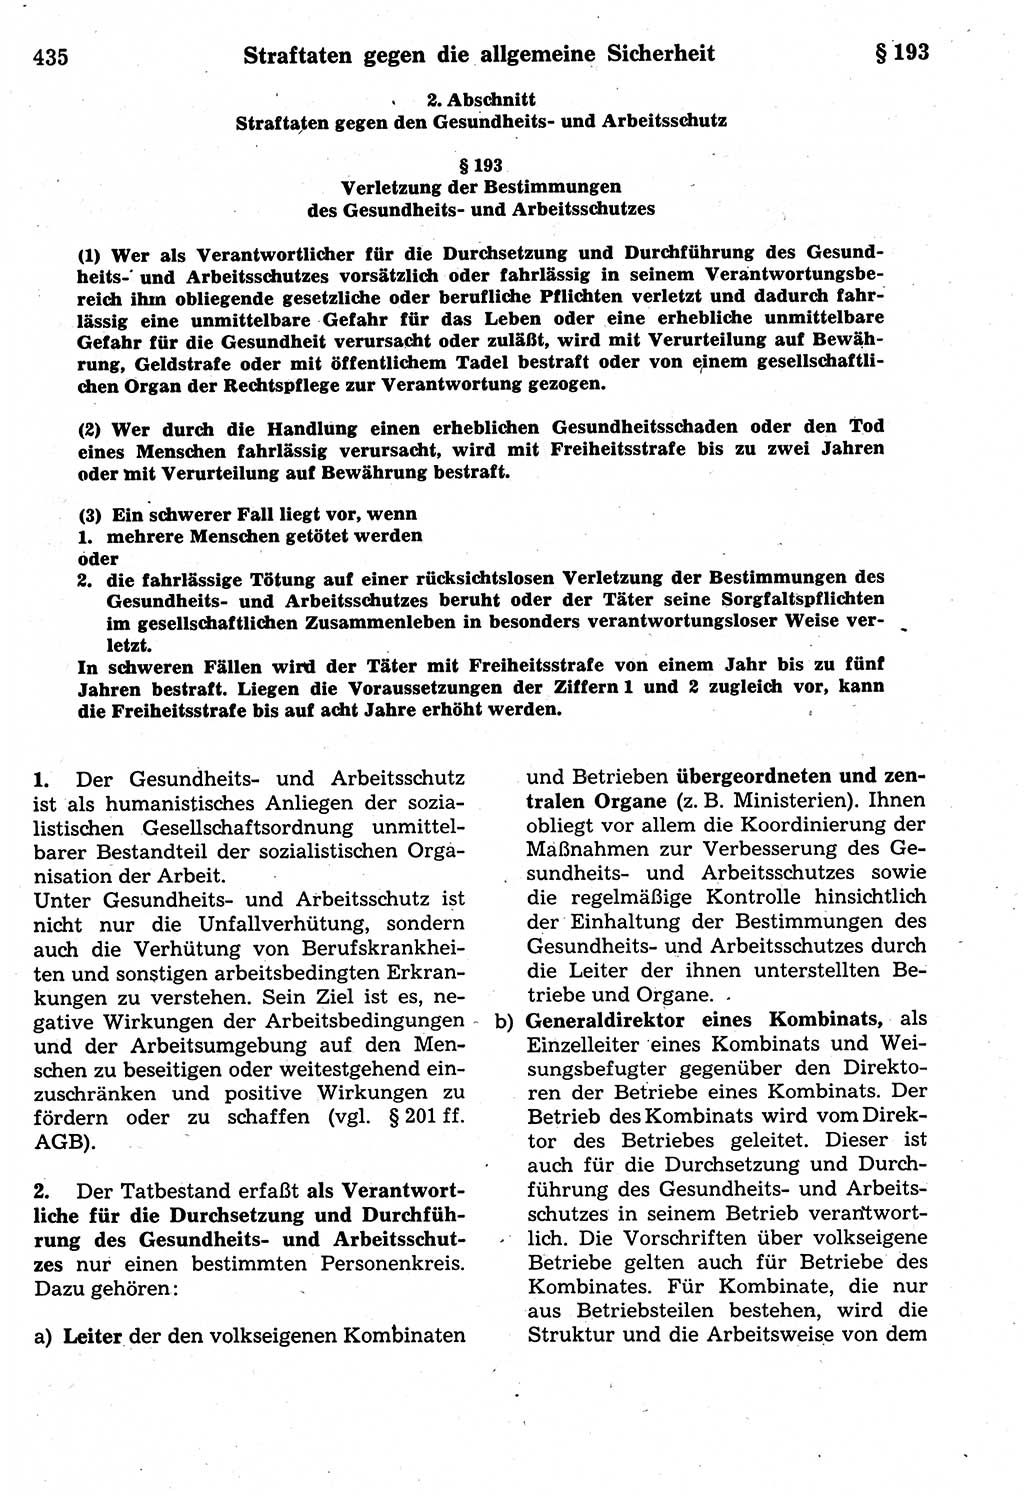 Strafrecht der Deutschen Demokratischen Republik (DDR), Kommentar zum Strafgesetzbuch (StGB) 1987, Seite 435 (Strafr. DDR Komm. StGB 1987, S. 435)